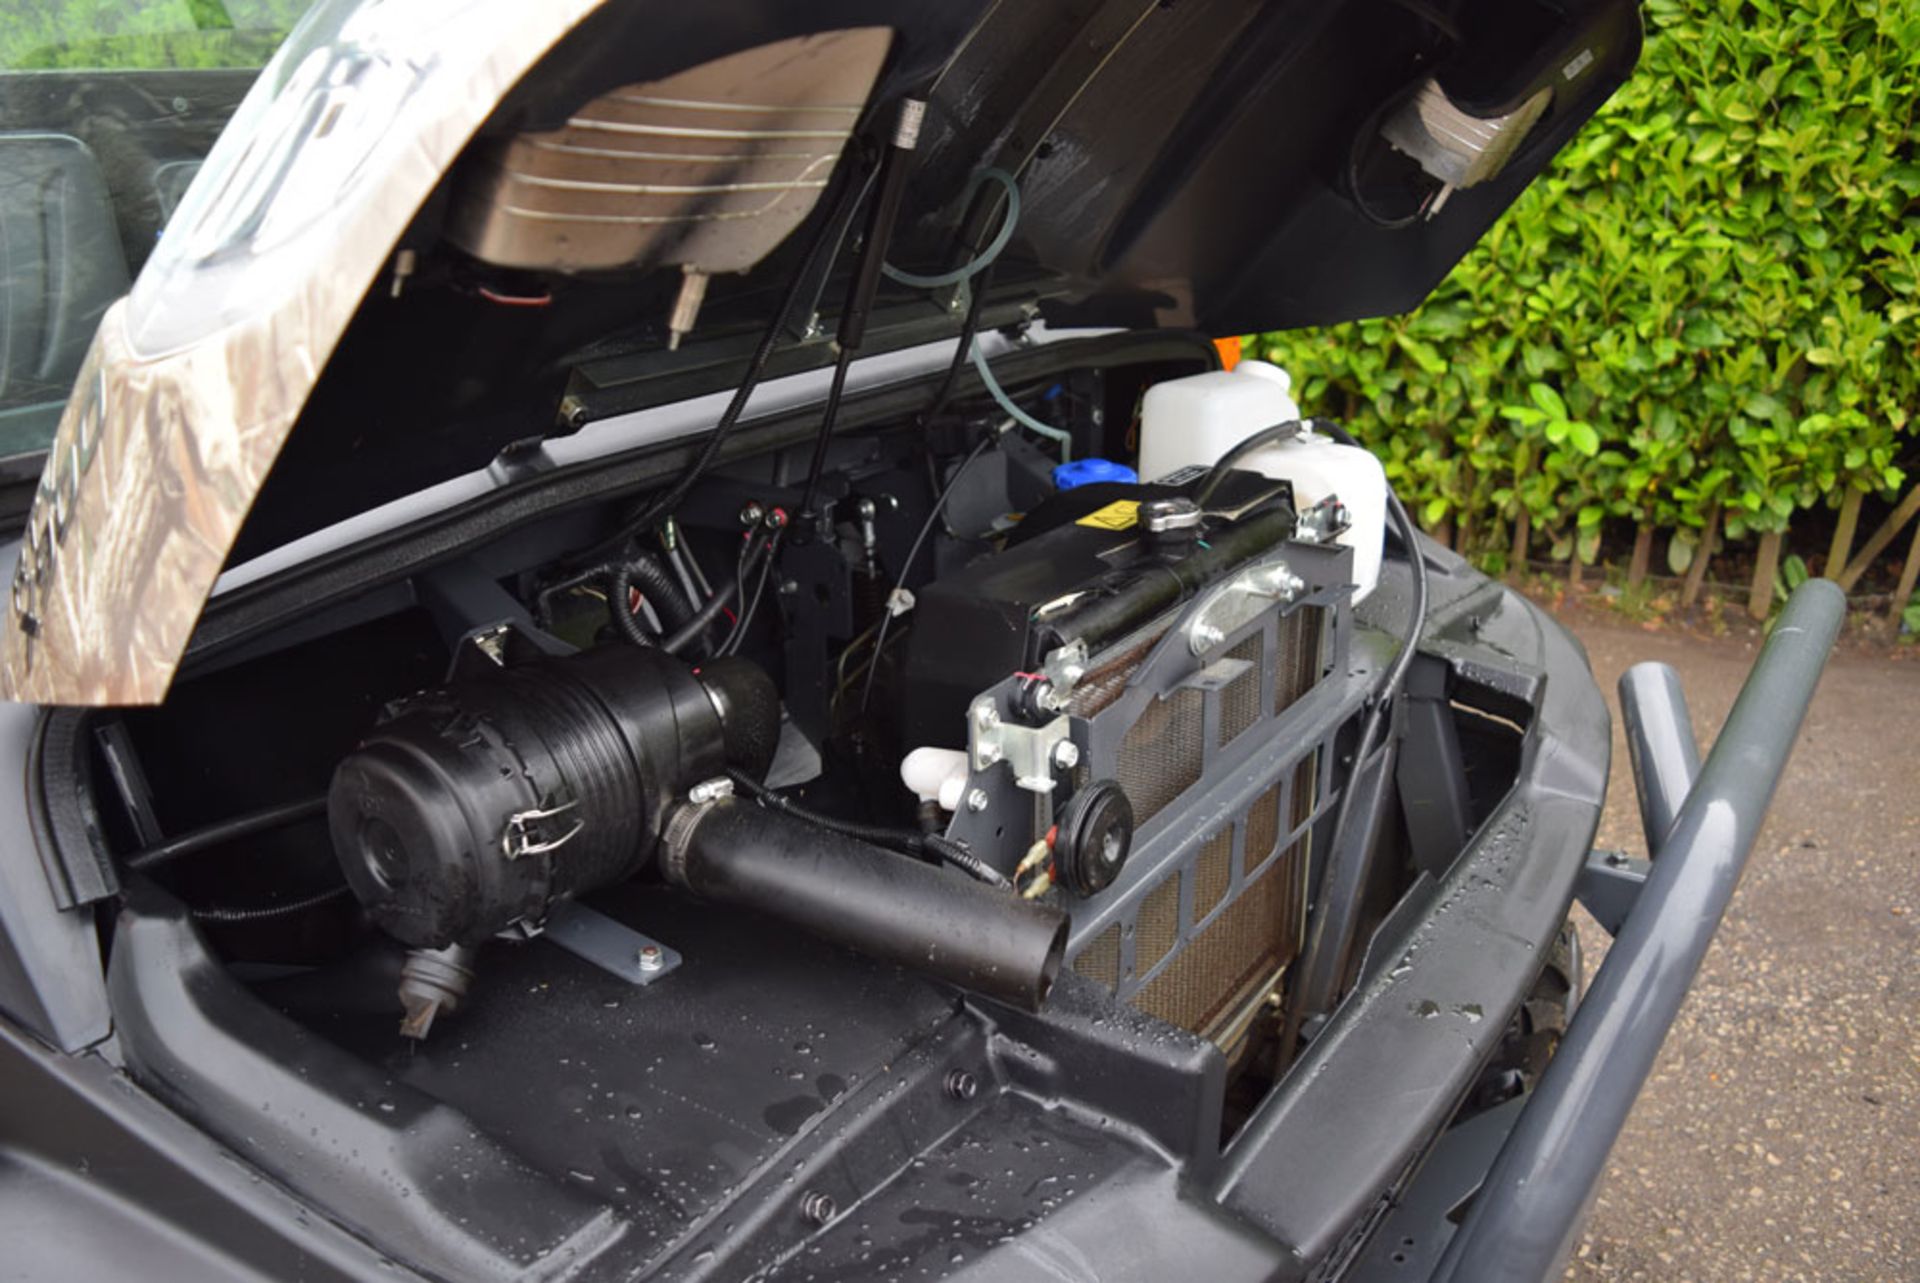 2016 Kubota RTV X900 Diesel Utility Task Vehicle With Cab - Image 14 of 14